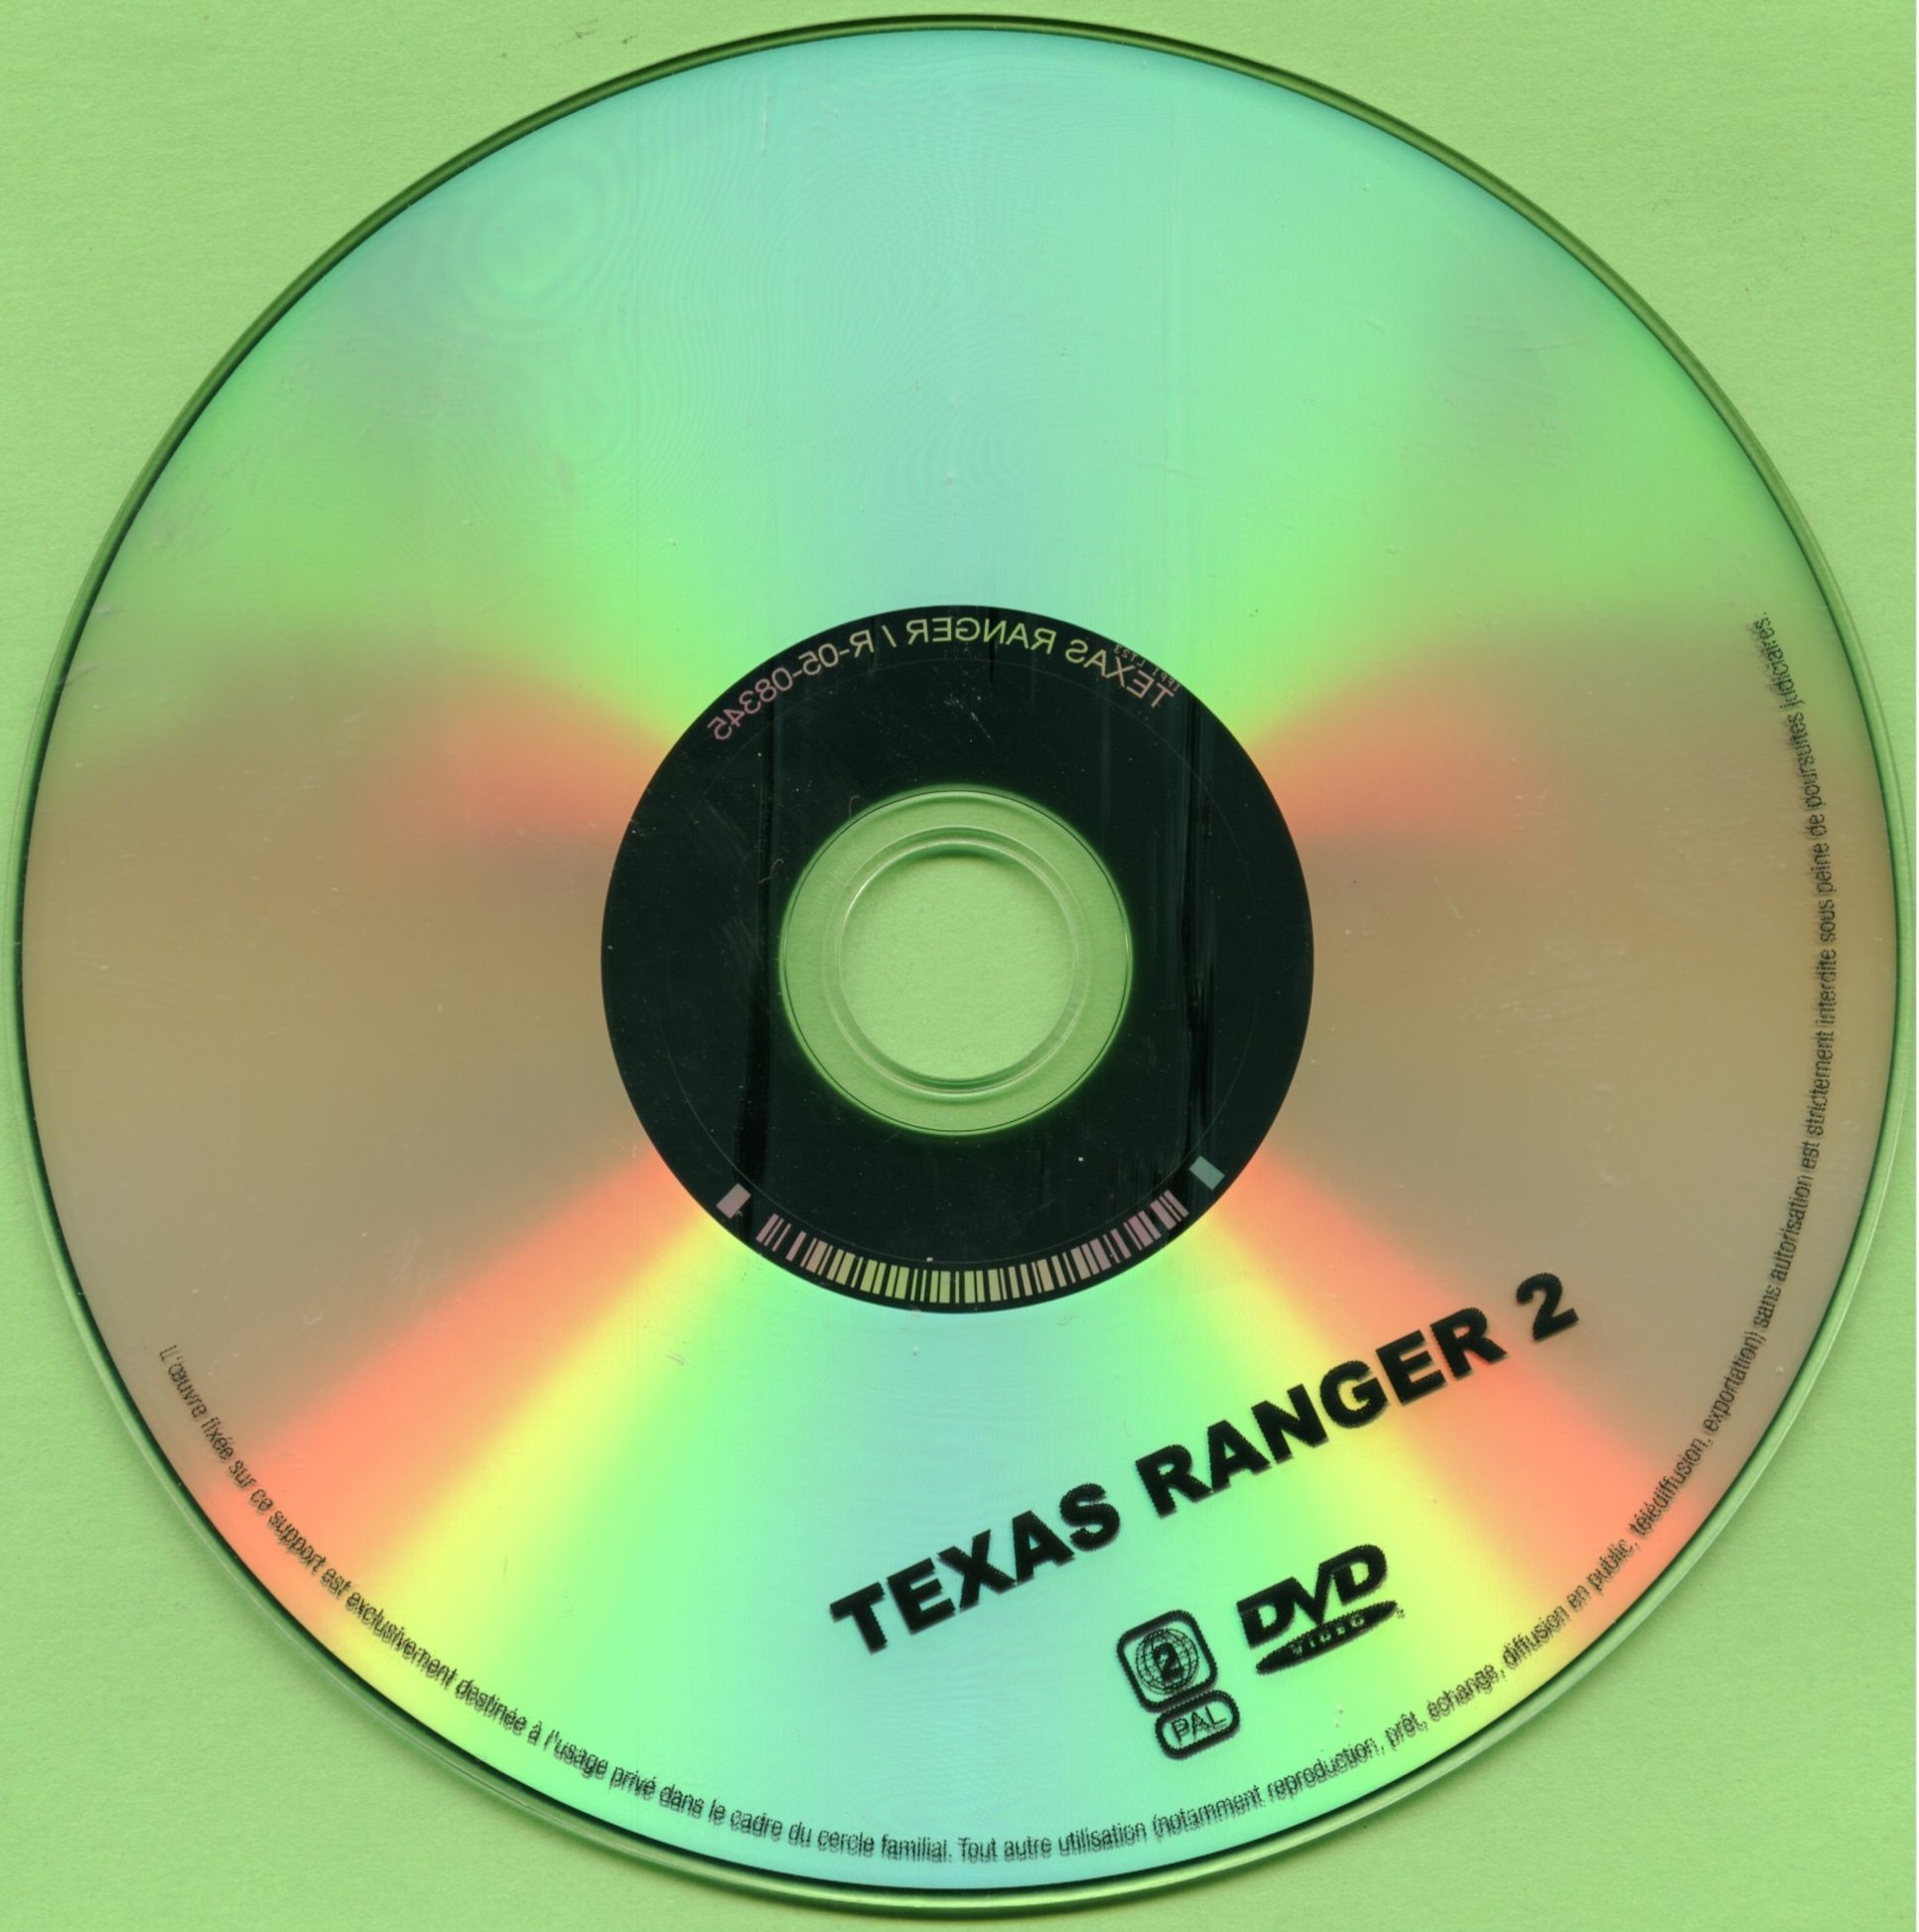 Texas ranger 2